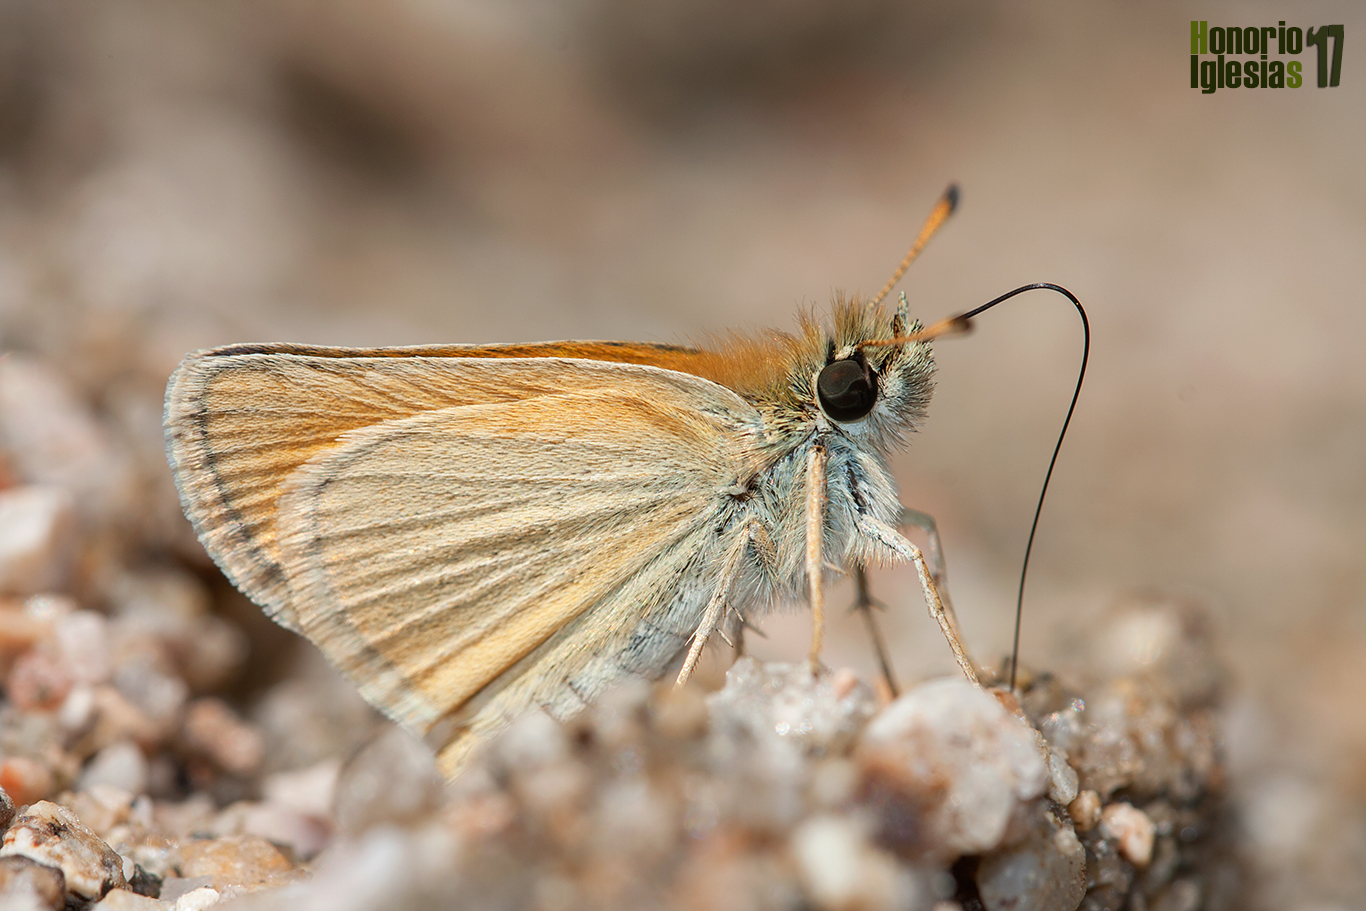 jemplar de mariposa dorada puntas negras o dorada línea corta (Thymelicus lineola) , libando las sales del borde de un arroyo serrano.